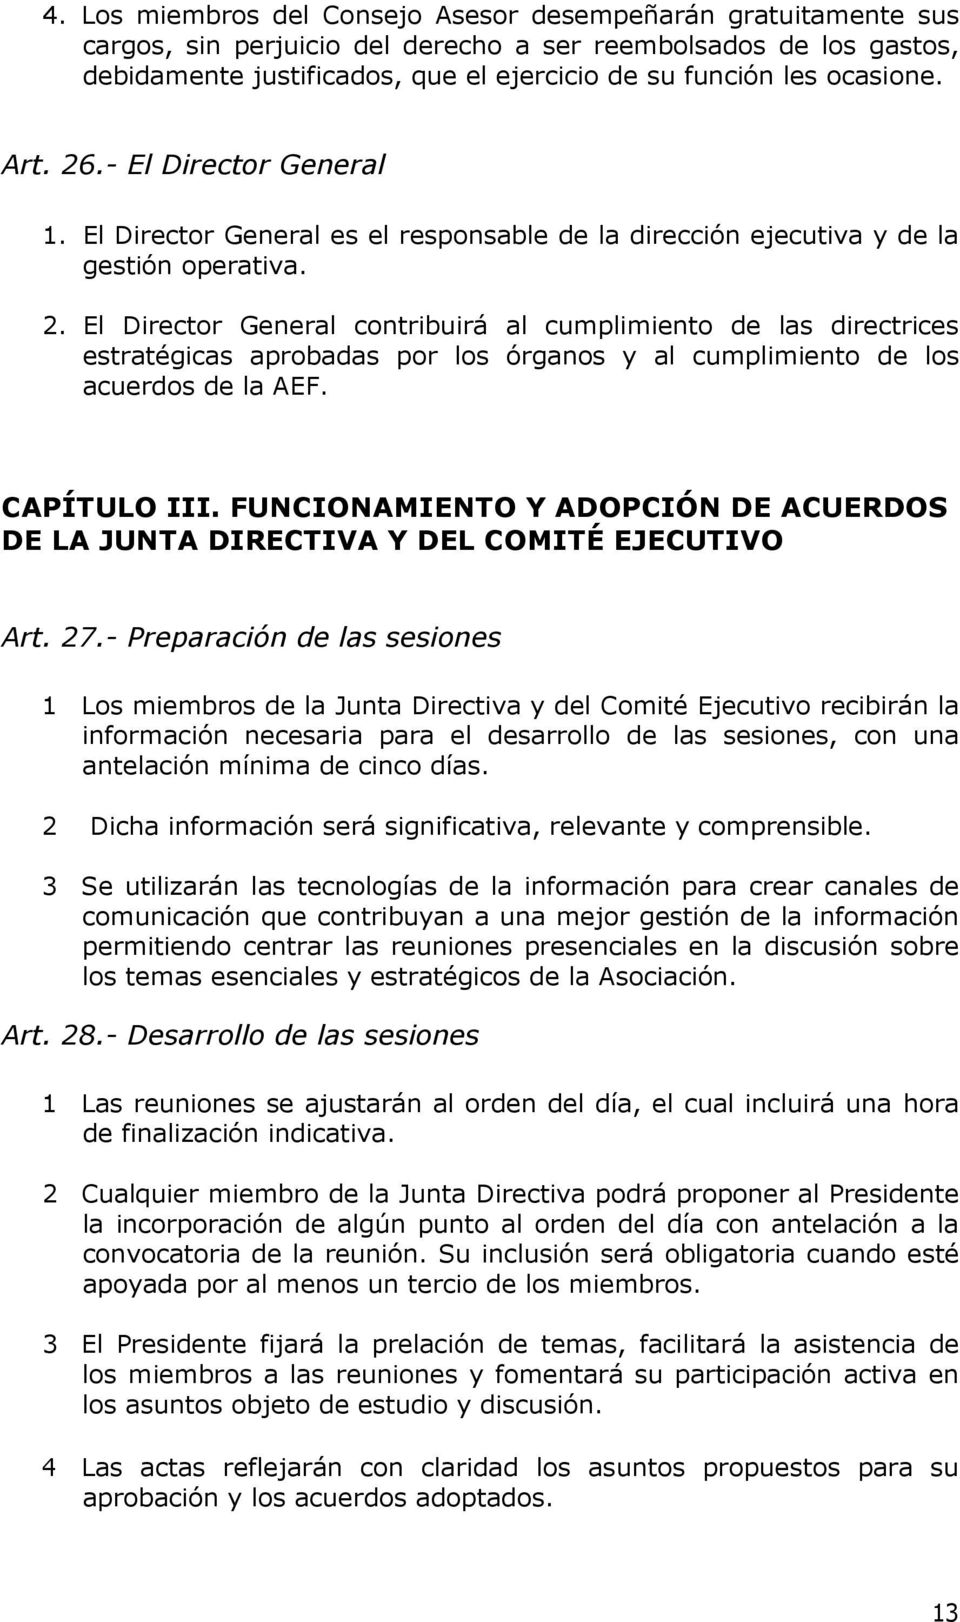 CAPÍTULO III. FUNCIONAMIENTO Y ADOPCIÓN DE ACUERDOS DE LA JUNTA DIRECTIVA Y DEL COMITÉ EJECUTIVO Art. 27.